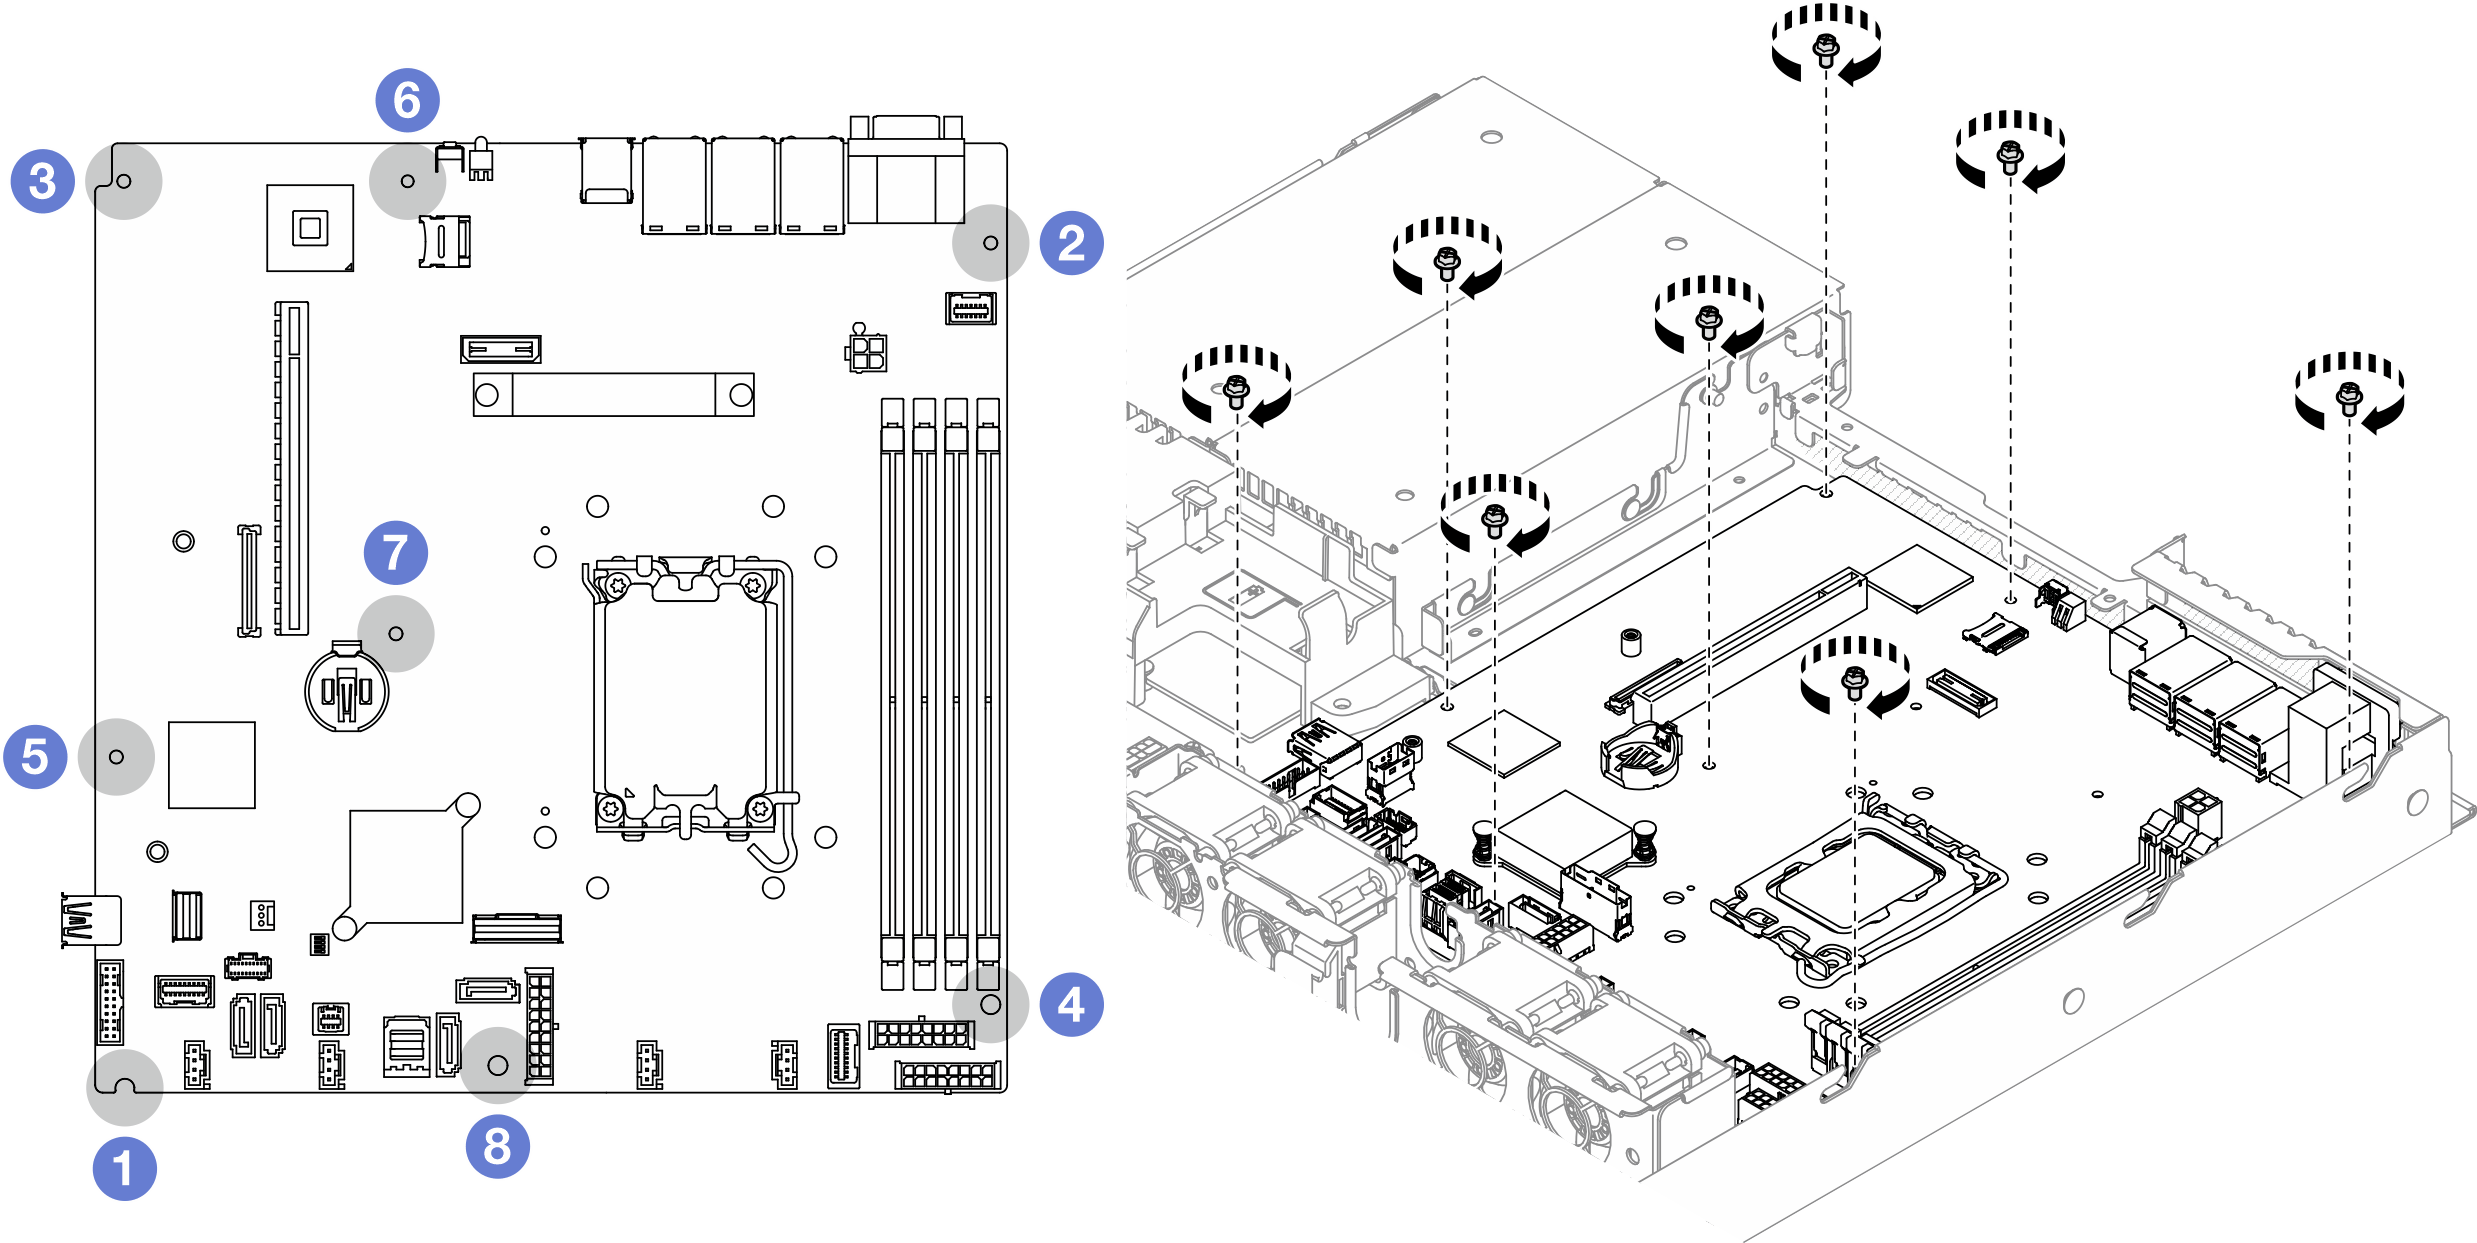 System-board screws location